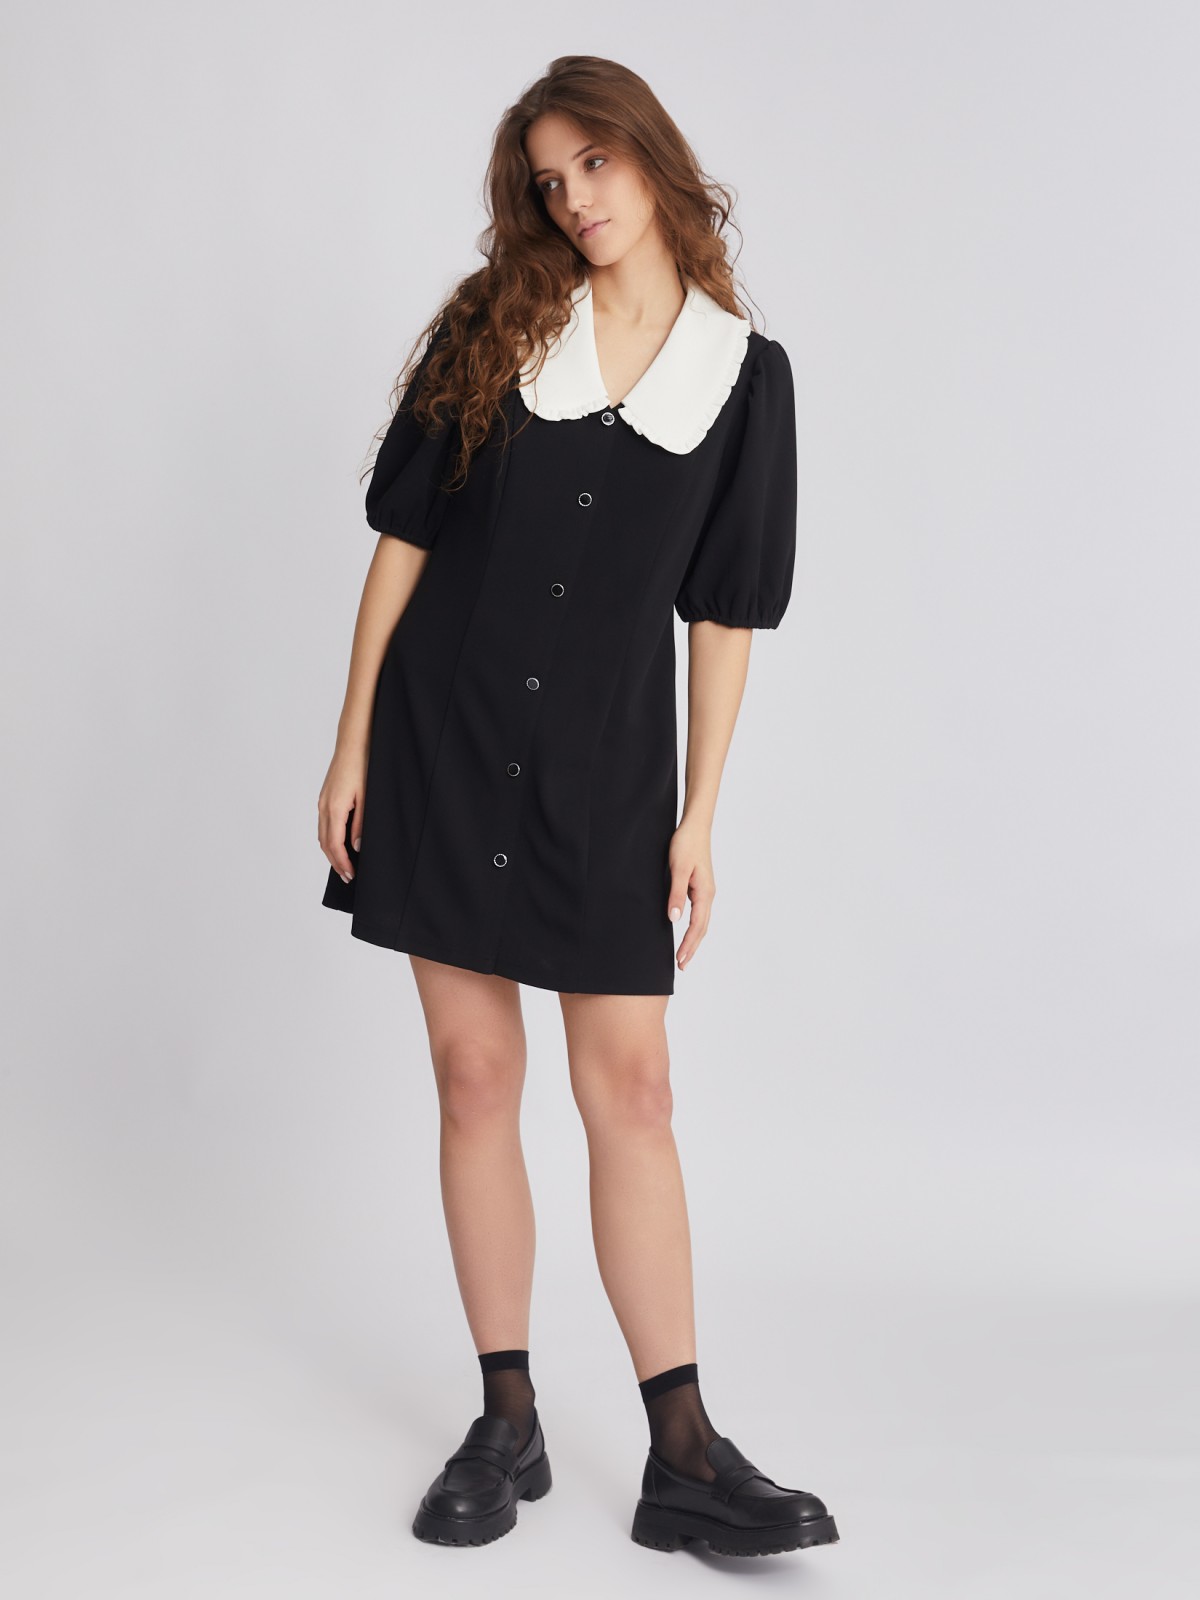 Платье длины мини с акцентным воротником zolla 223318159121, цвет черный, размер XS - фото 2